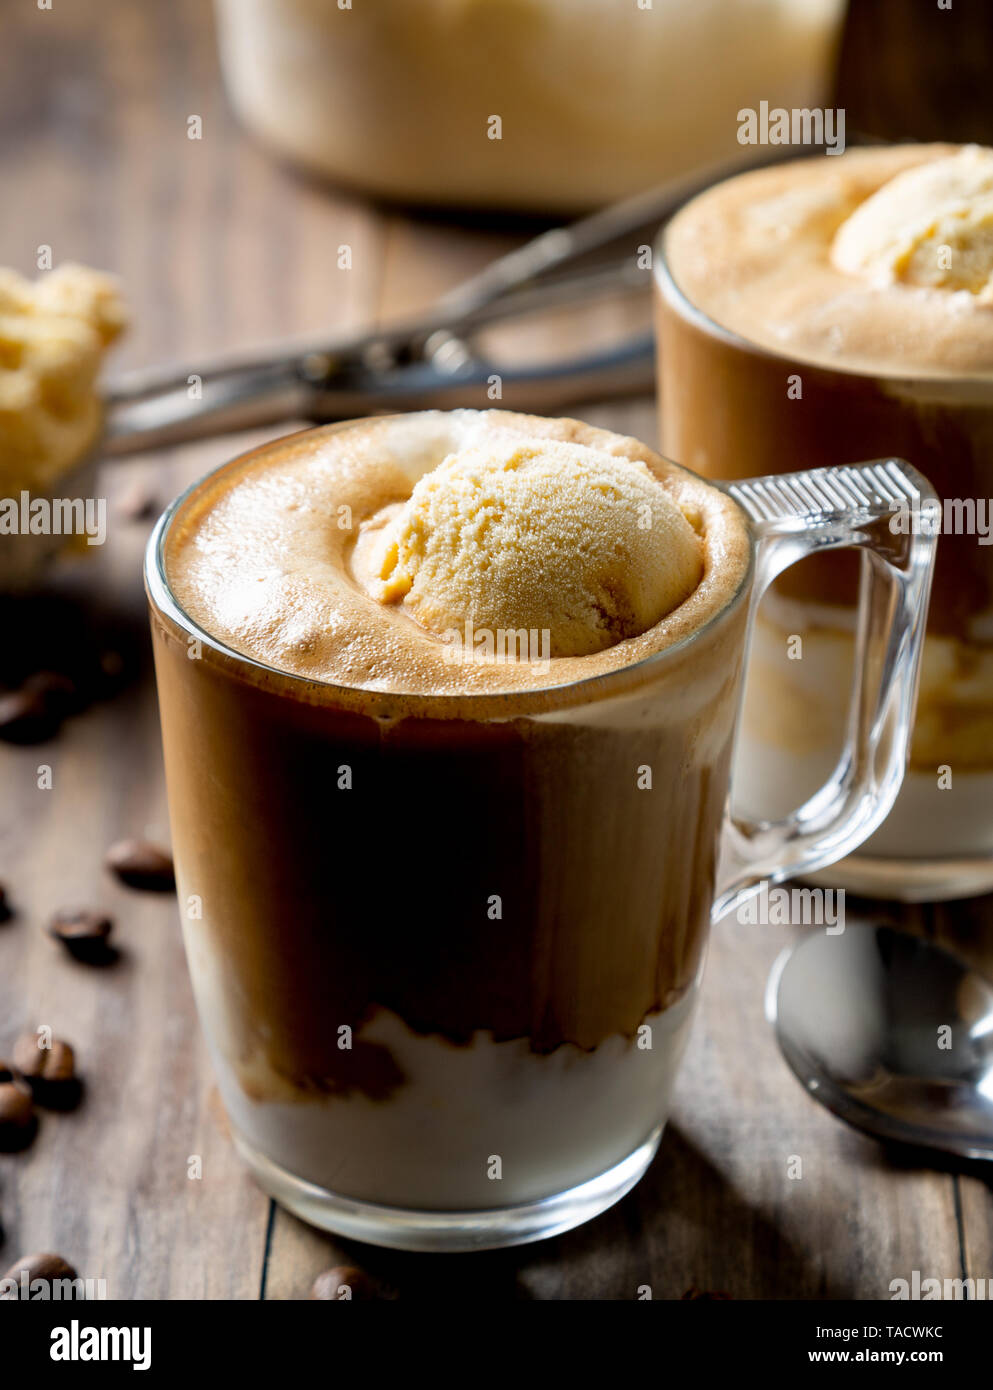 Espresso Affogato Coffee Plastic Cup Stock Photo 1525165793